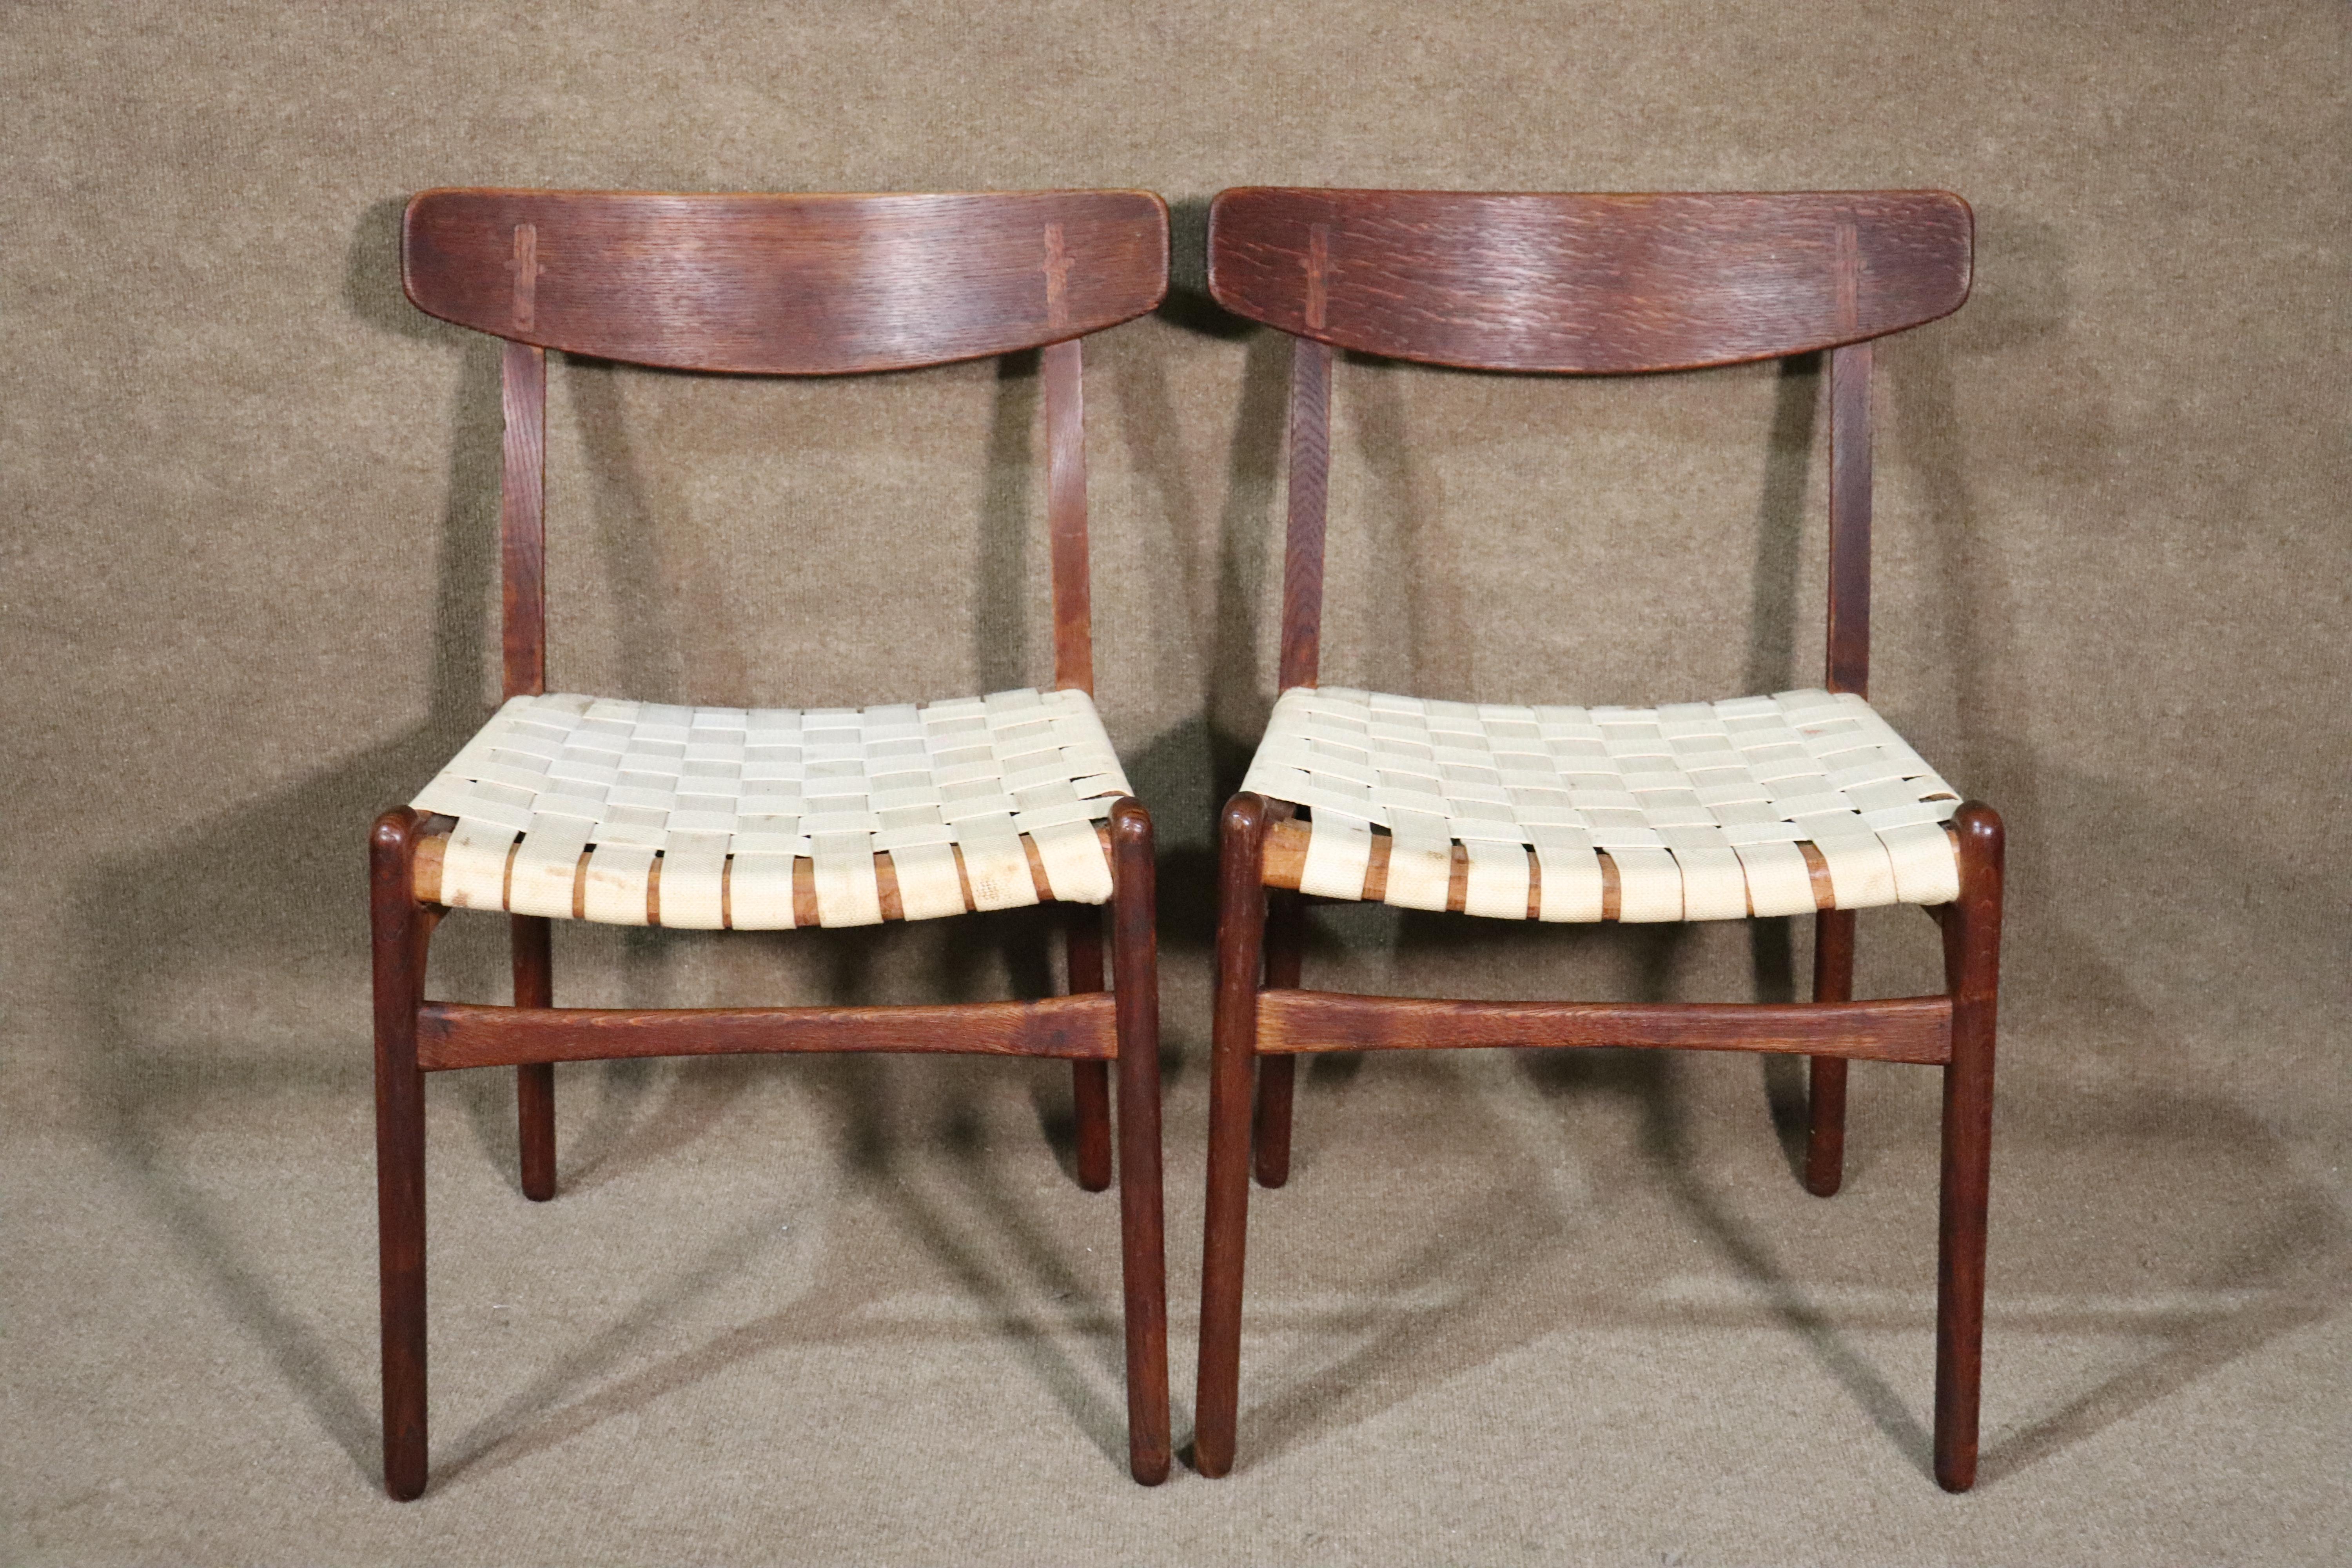 Ensemble de quatre chaises de salle à manger conçues par Hans Wegner. Design moderne emblématique du milieu du siècle dernier avec assise à sangles et croix incrustée sur les dossiers des sièges.
Veuillez confirmer l'emplacement.